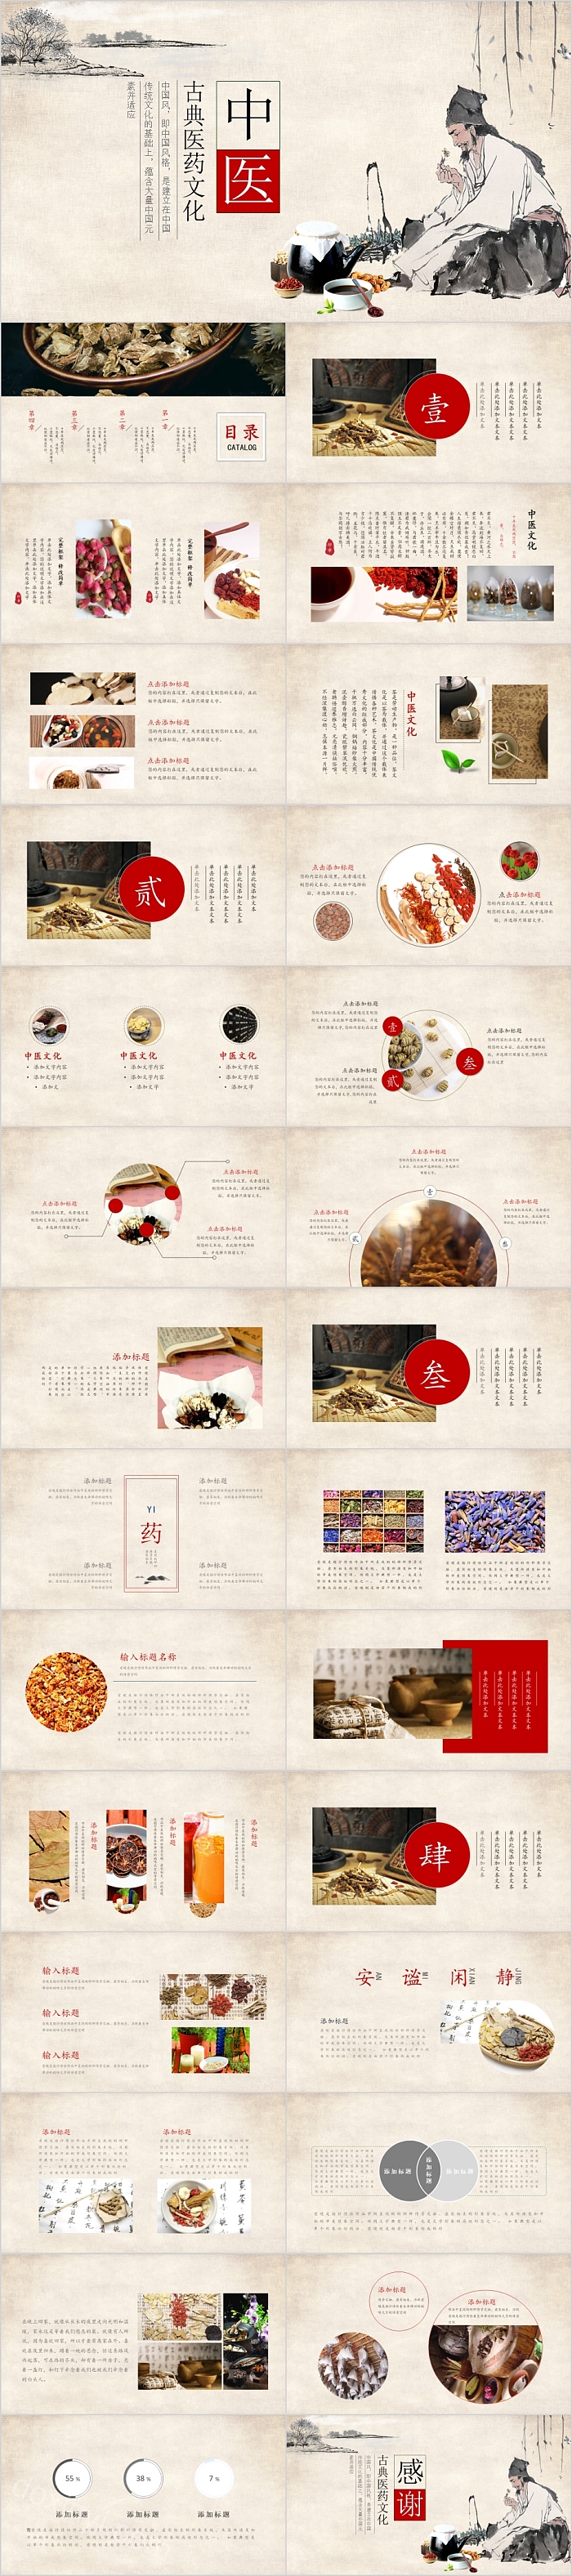 中国风古典医药文化模板